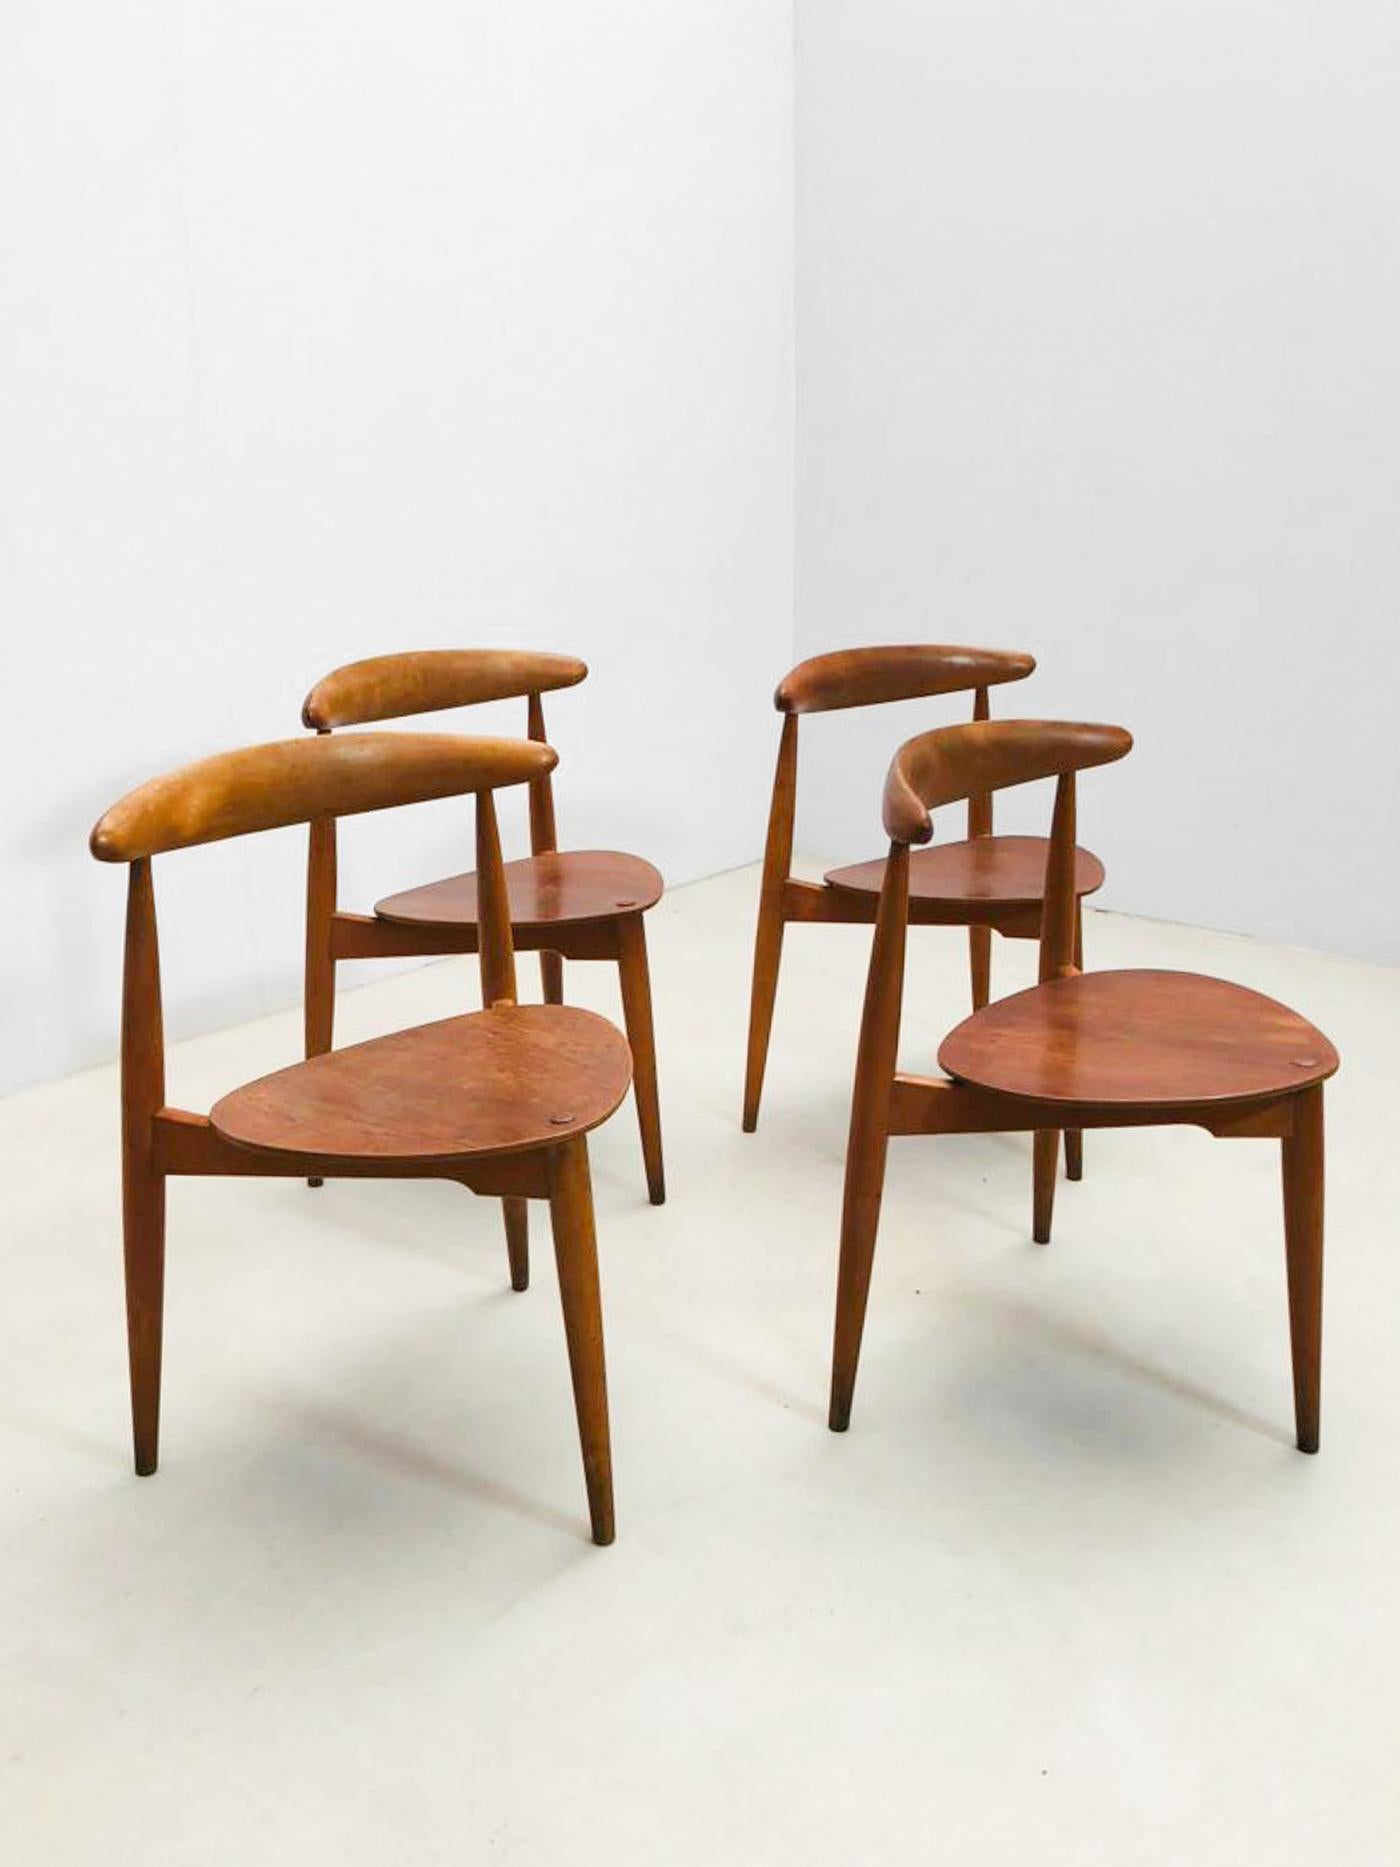 Ensemble de 4 chaises tripodes 'FH4103', par le célèbre Hans J. Wegner pour Fritz Hansen dans les années 1950.
Ces chaises emblématiques sont affectueusement appelées 